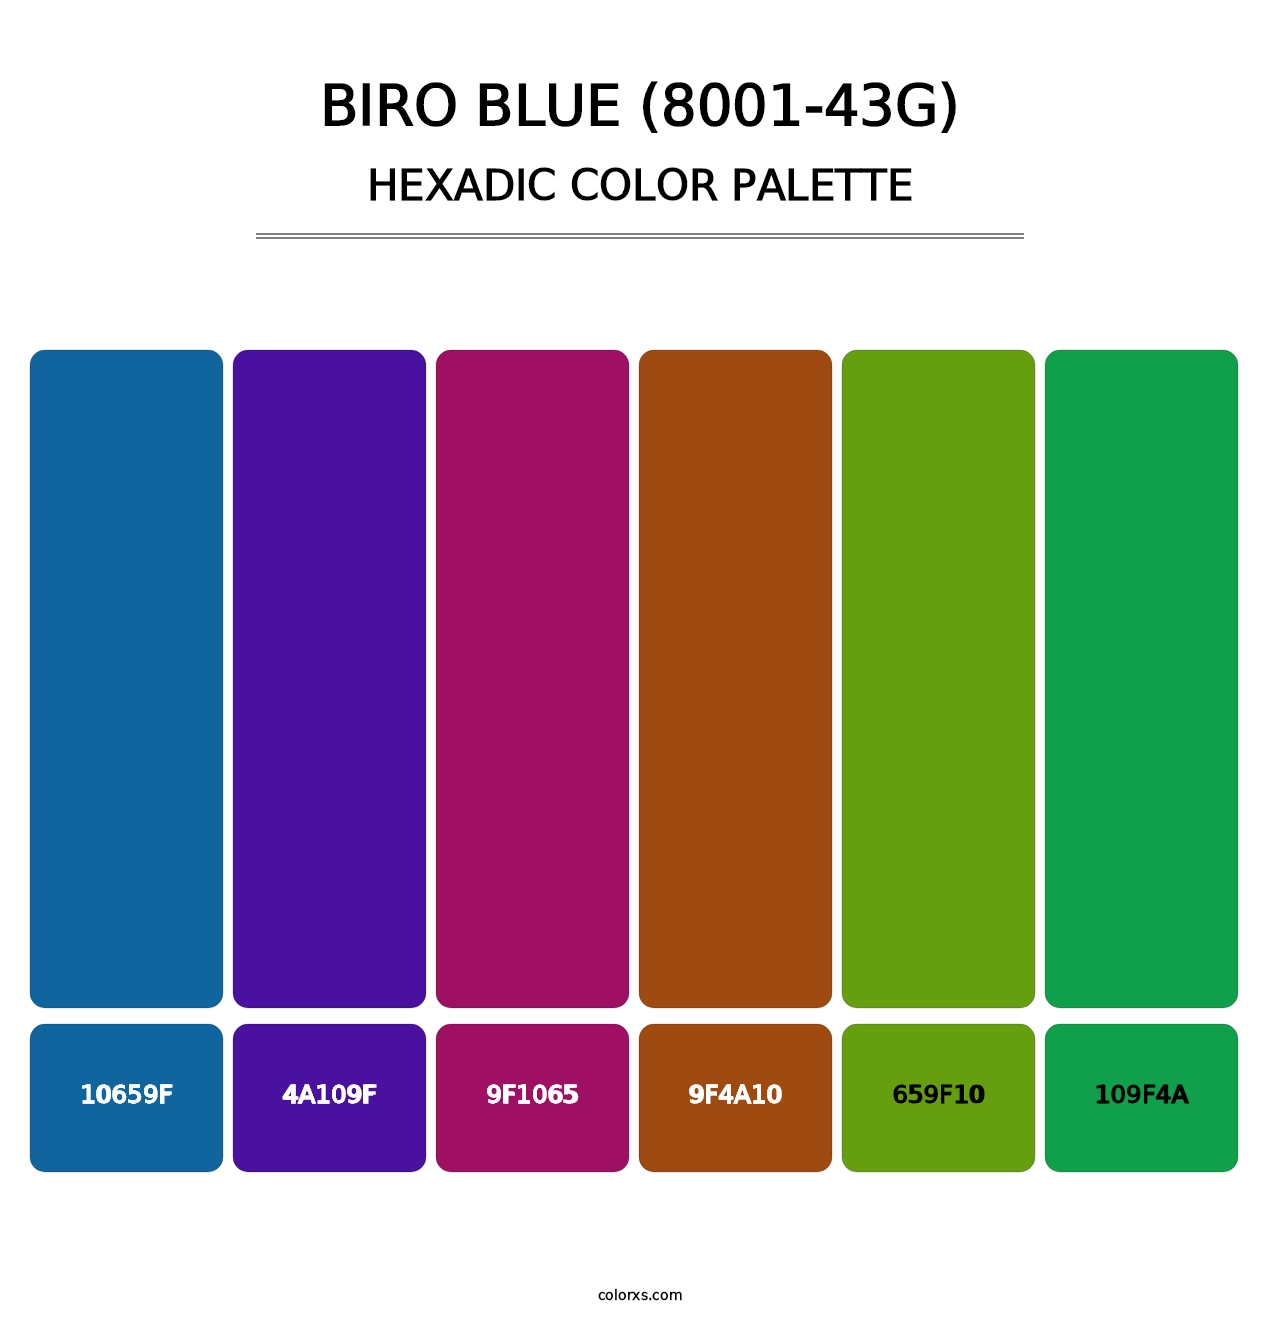 Biro Blue (8001-43G) - Hexadic Color Palette